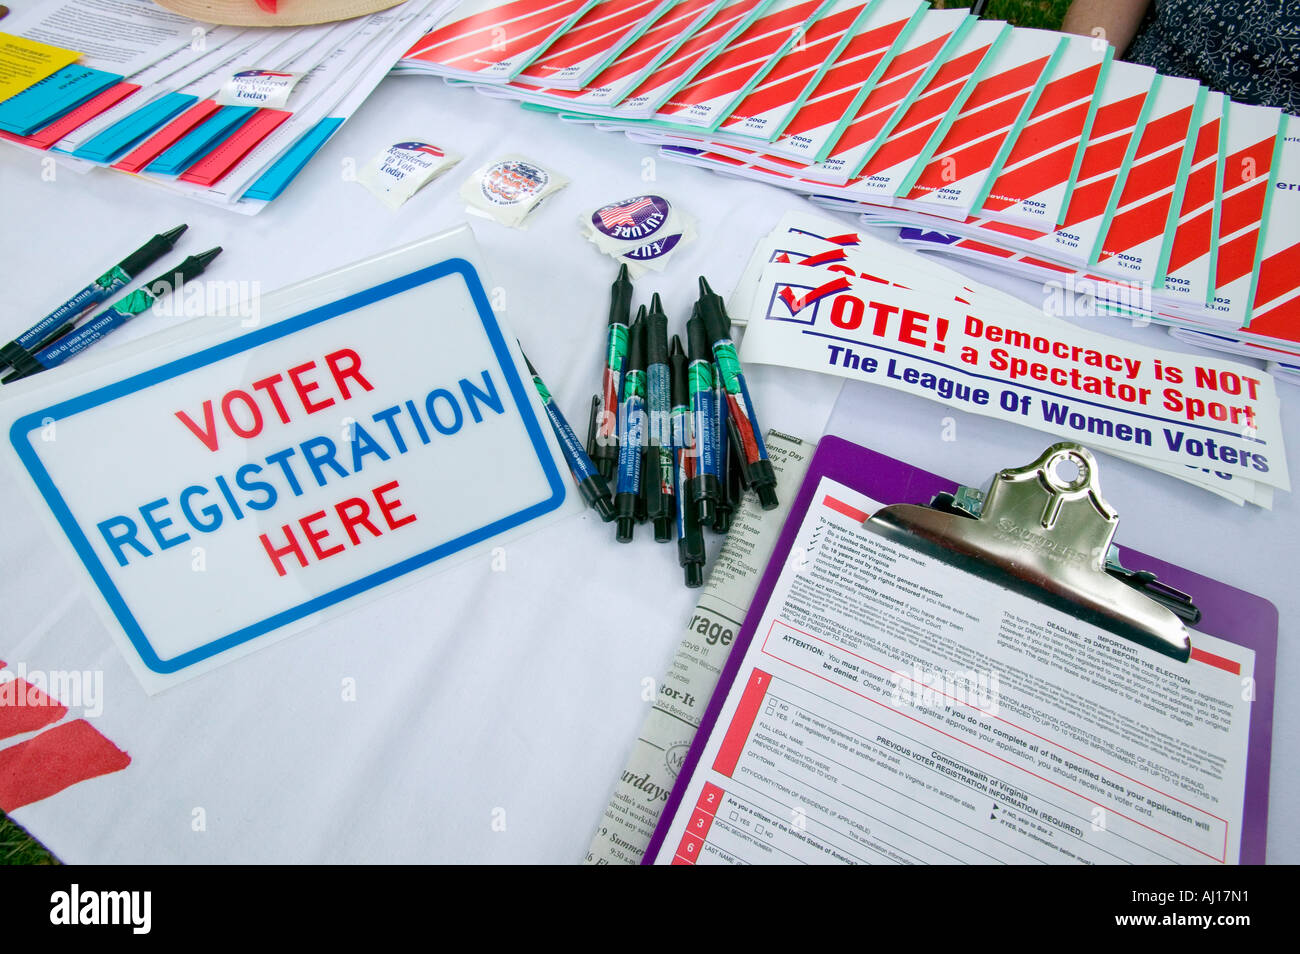 La registrazione degli elettori forme a promuovere la partecipazione dei cittadini a Thomas Jefferson s Monticello il 4 luglio 2005 per il nuovo American Foto Stock